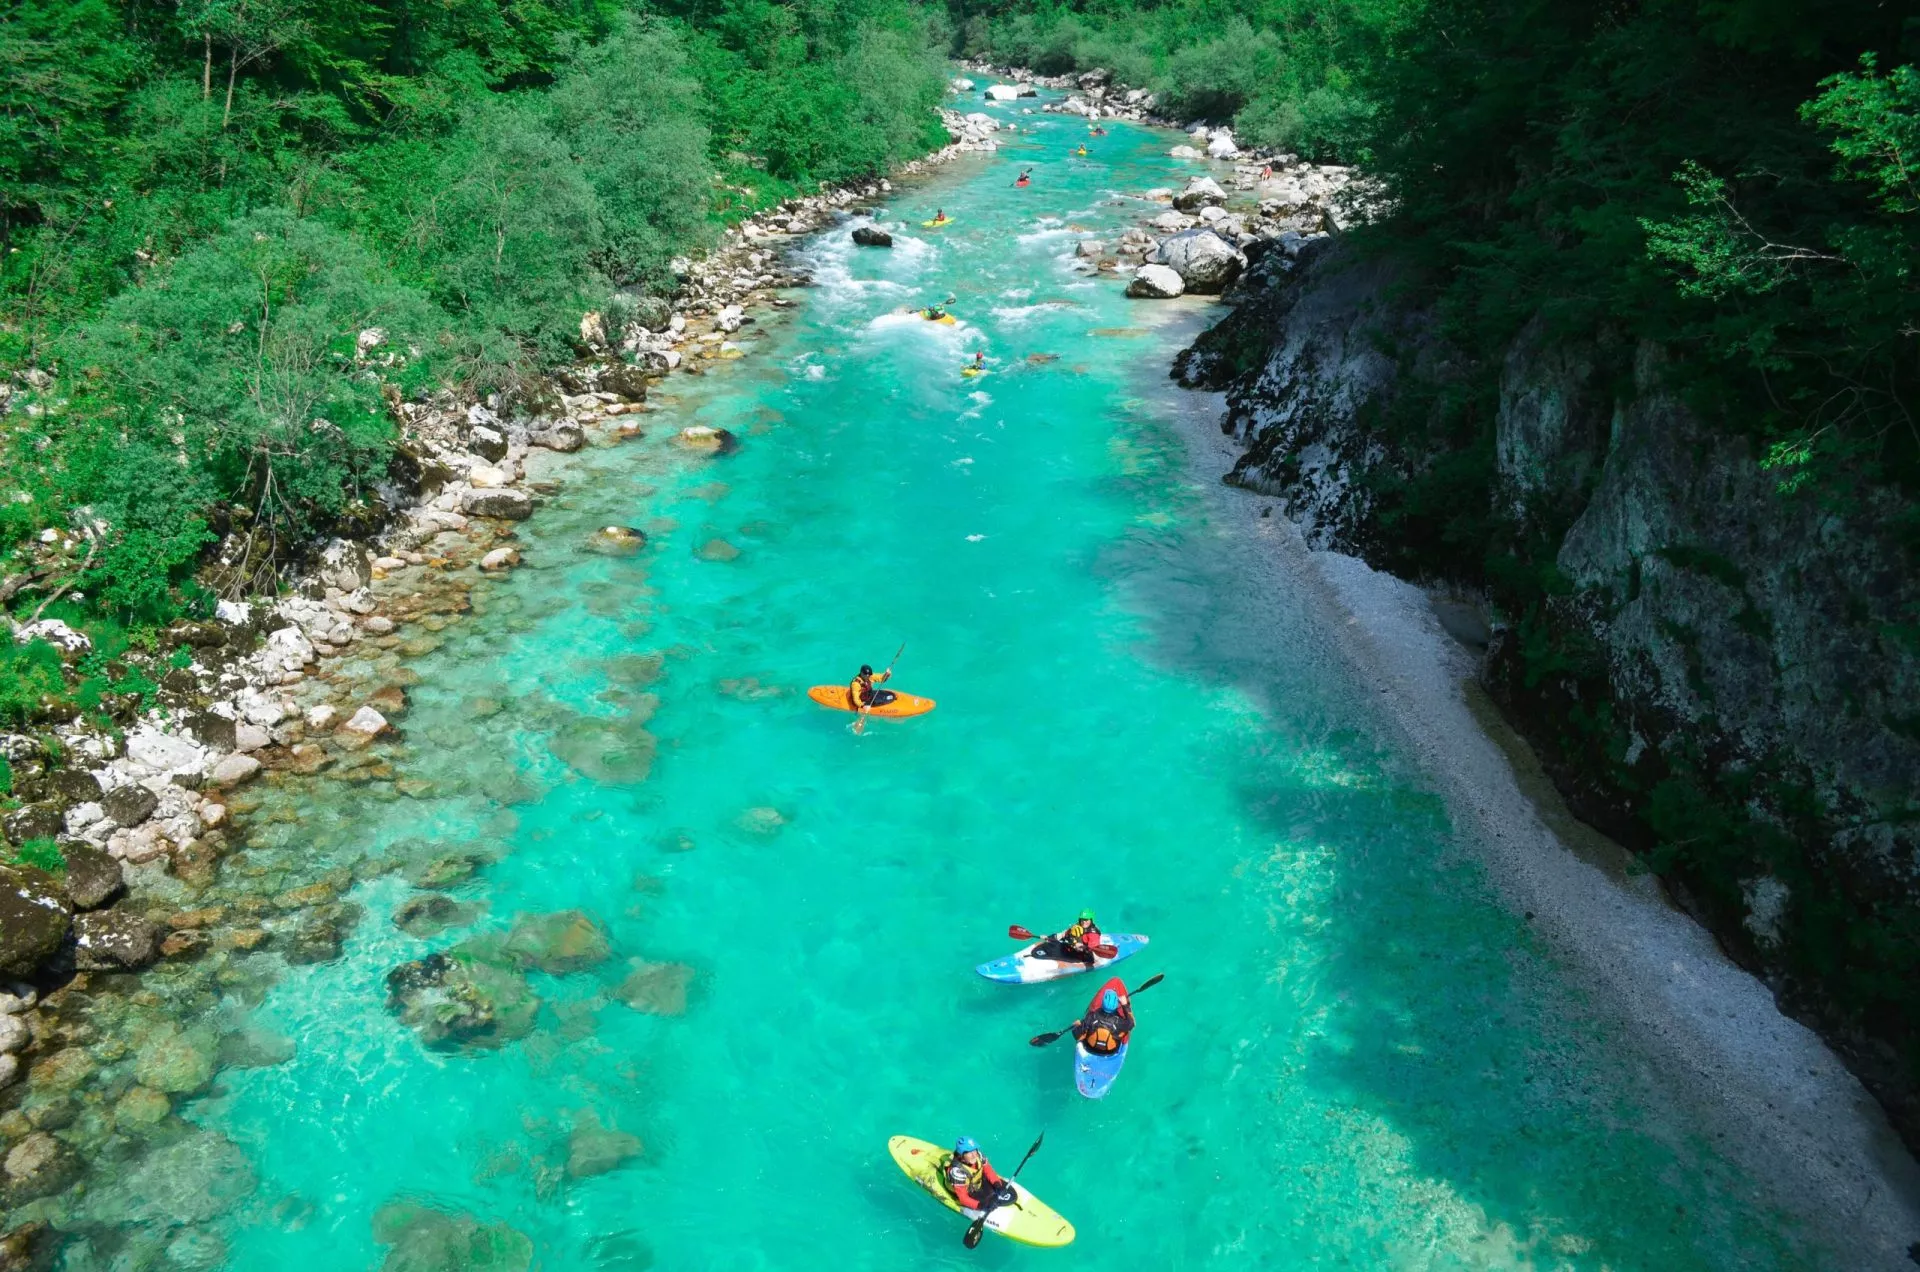 Partecipate a un'avventura adrenalinica sul fiume Soča